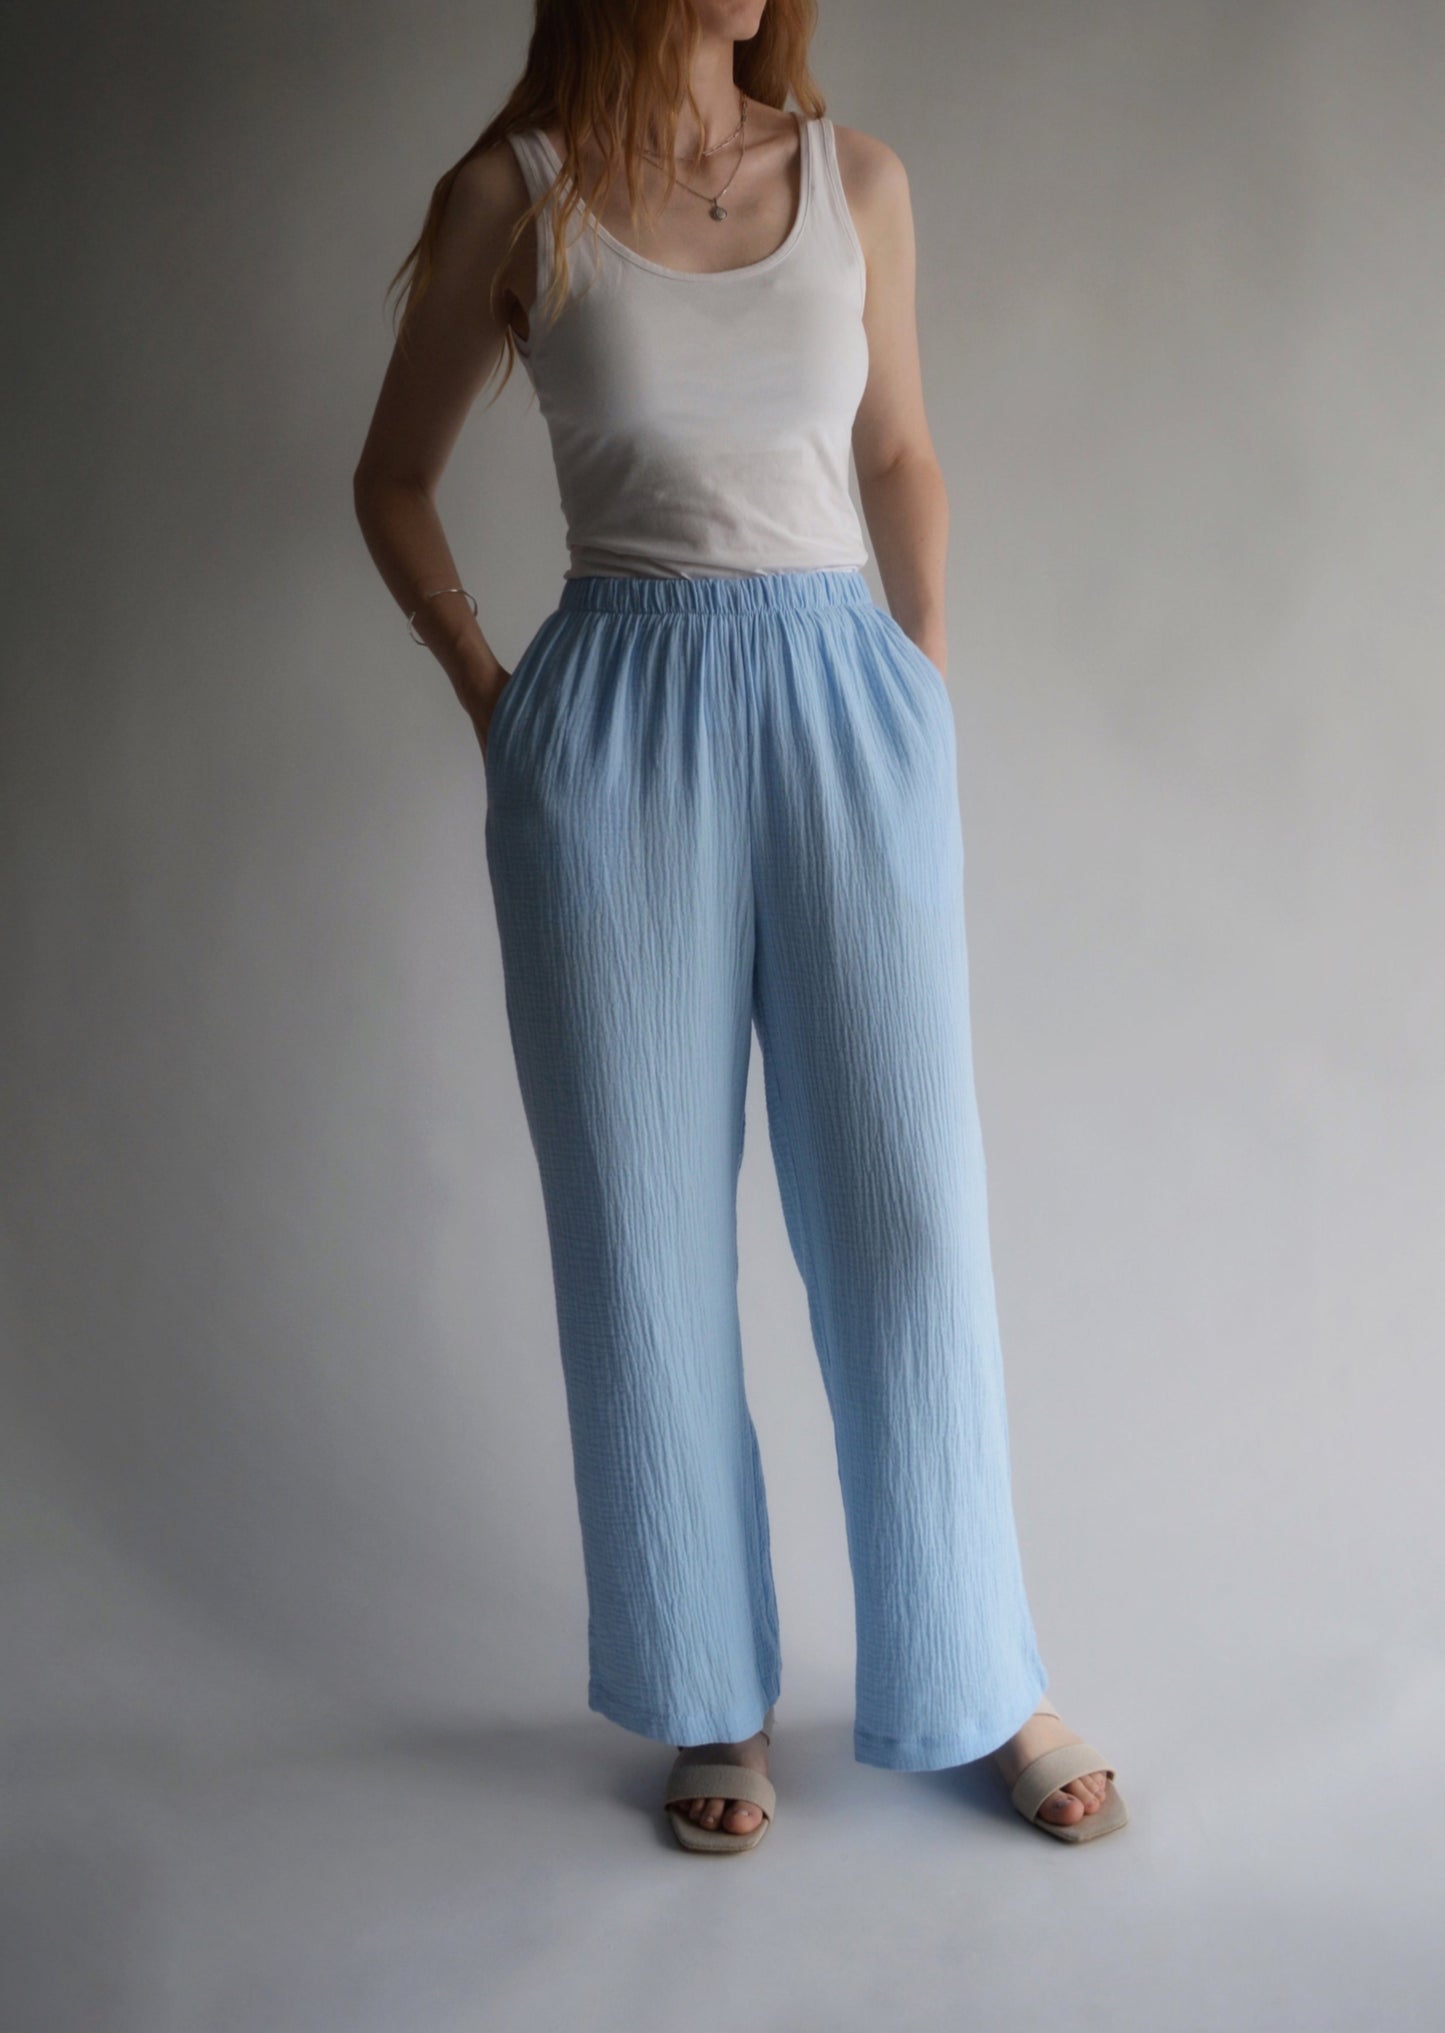 Cotton Muslin Pants in Light Blue